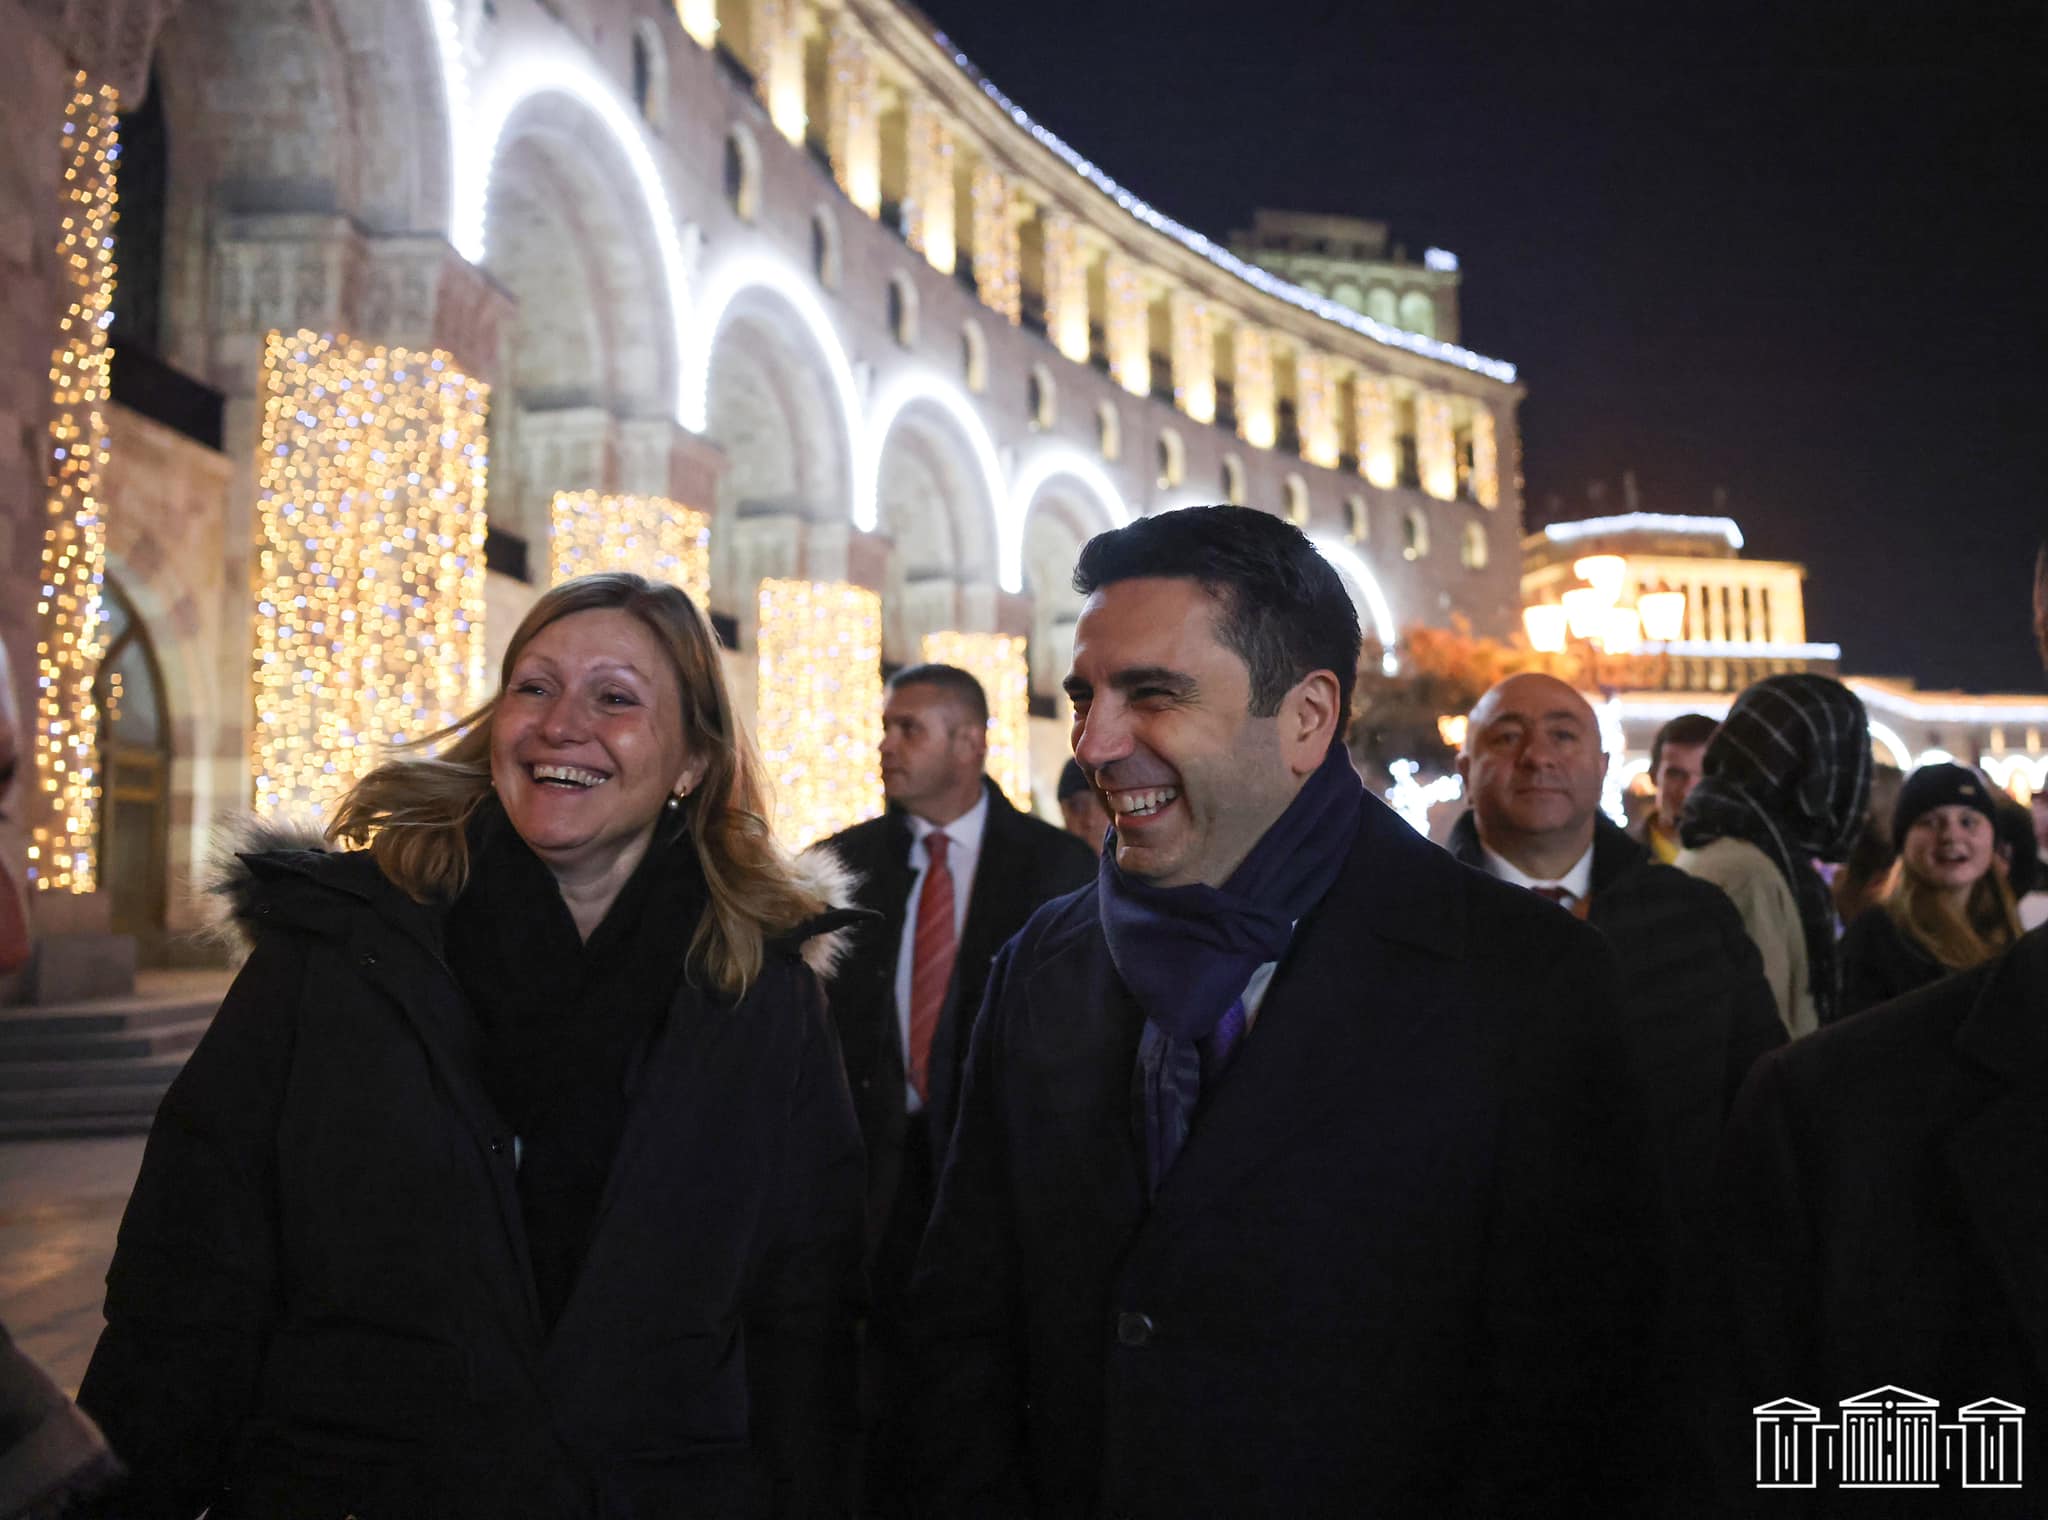 Ֆրանսիայի Ազգային ժողովի նախագահ Յաել Բրաուն-Պիվեի հետ զբոսանք գիշերային Երևանում. Ալեն Սիմոնյանը լուսանկարներ է հրապարակել